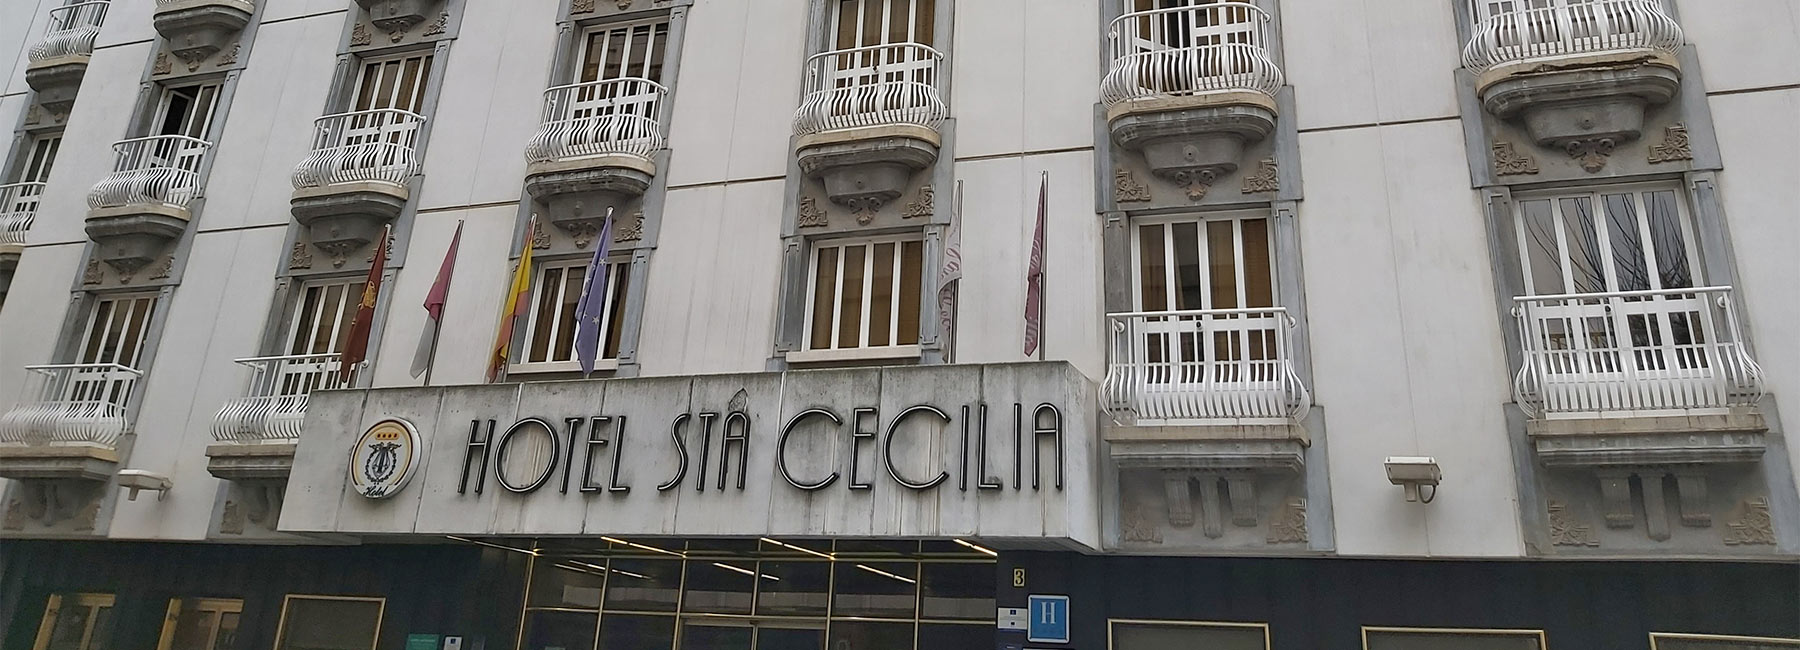 Hotel Santa Cecilia  header